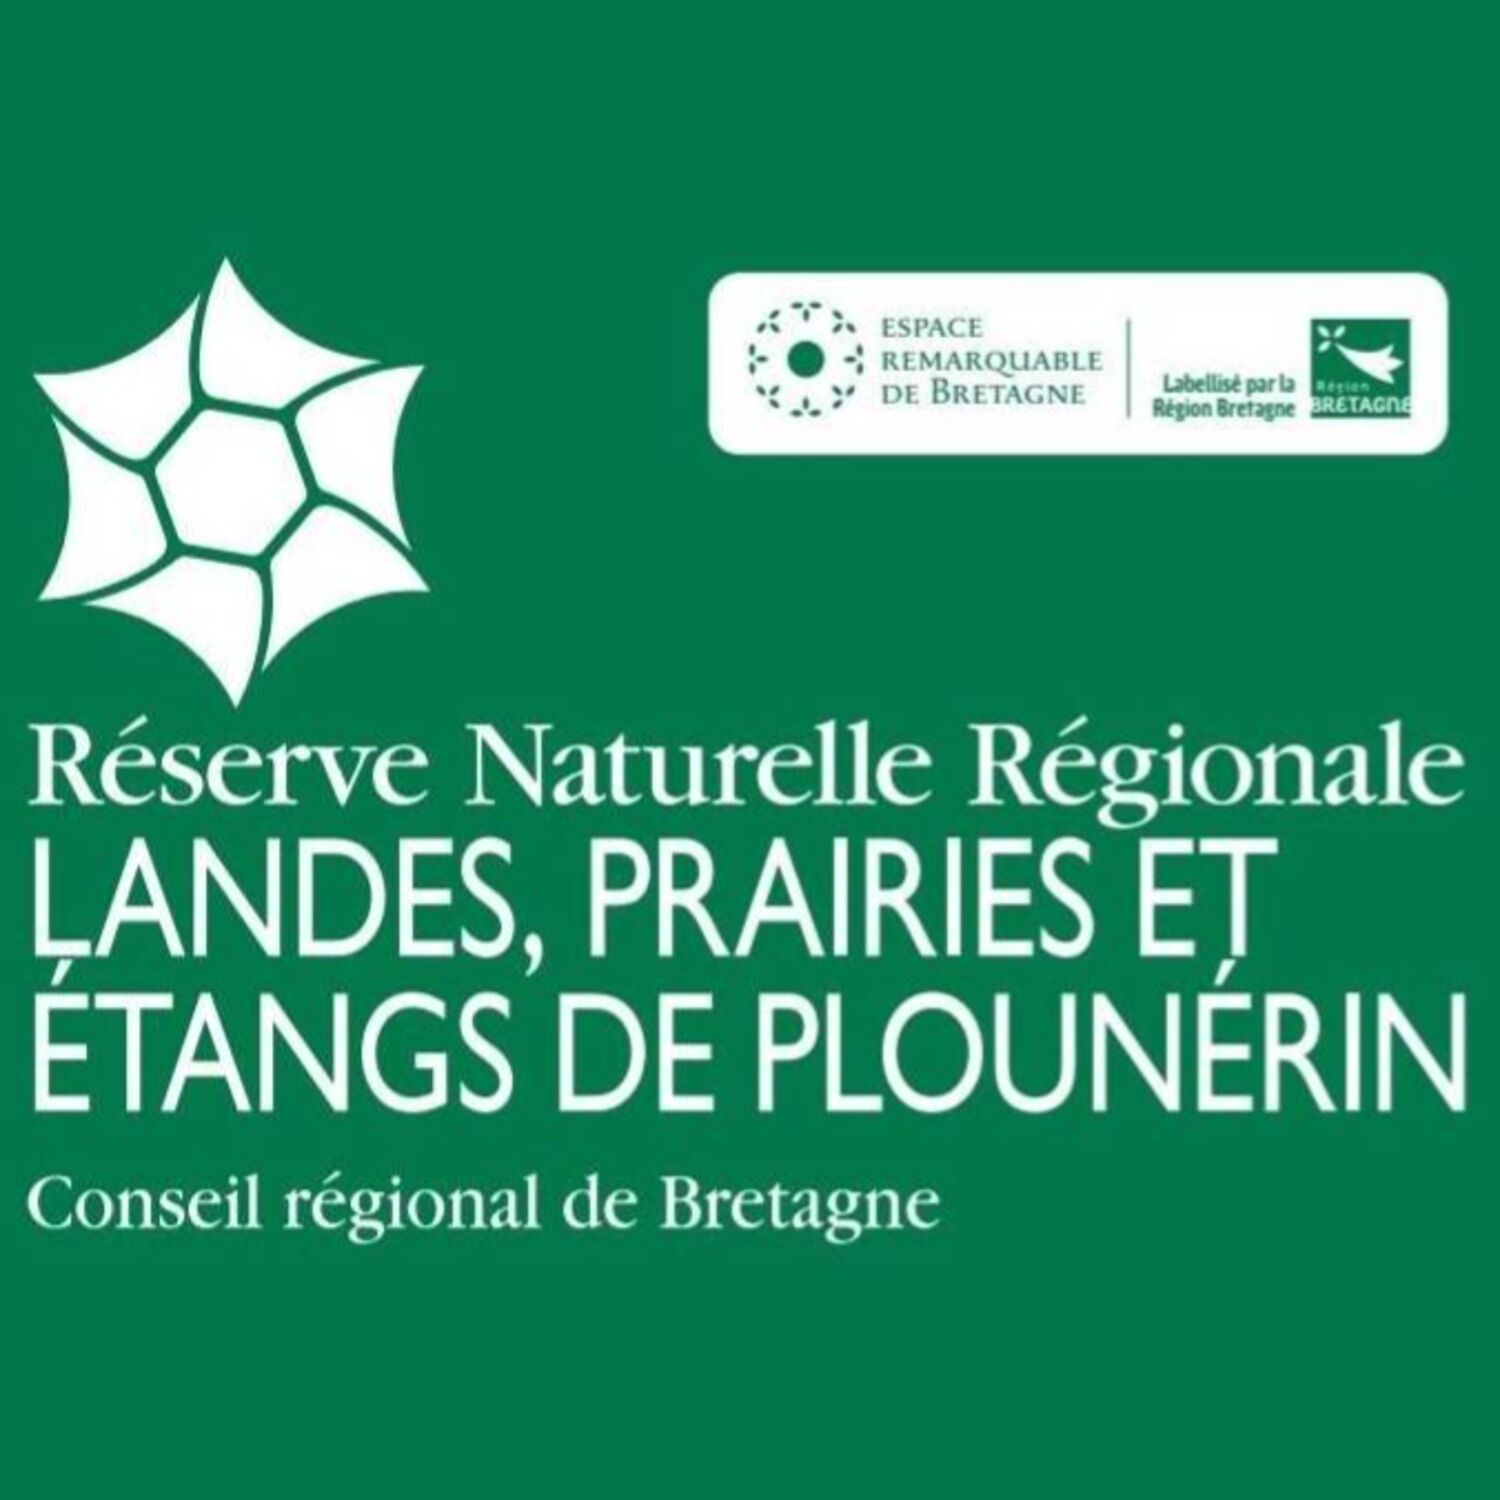 La Réserve Naturelle Régionale de Plounérin